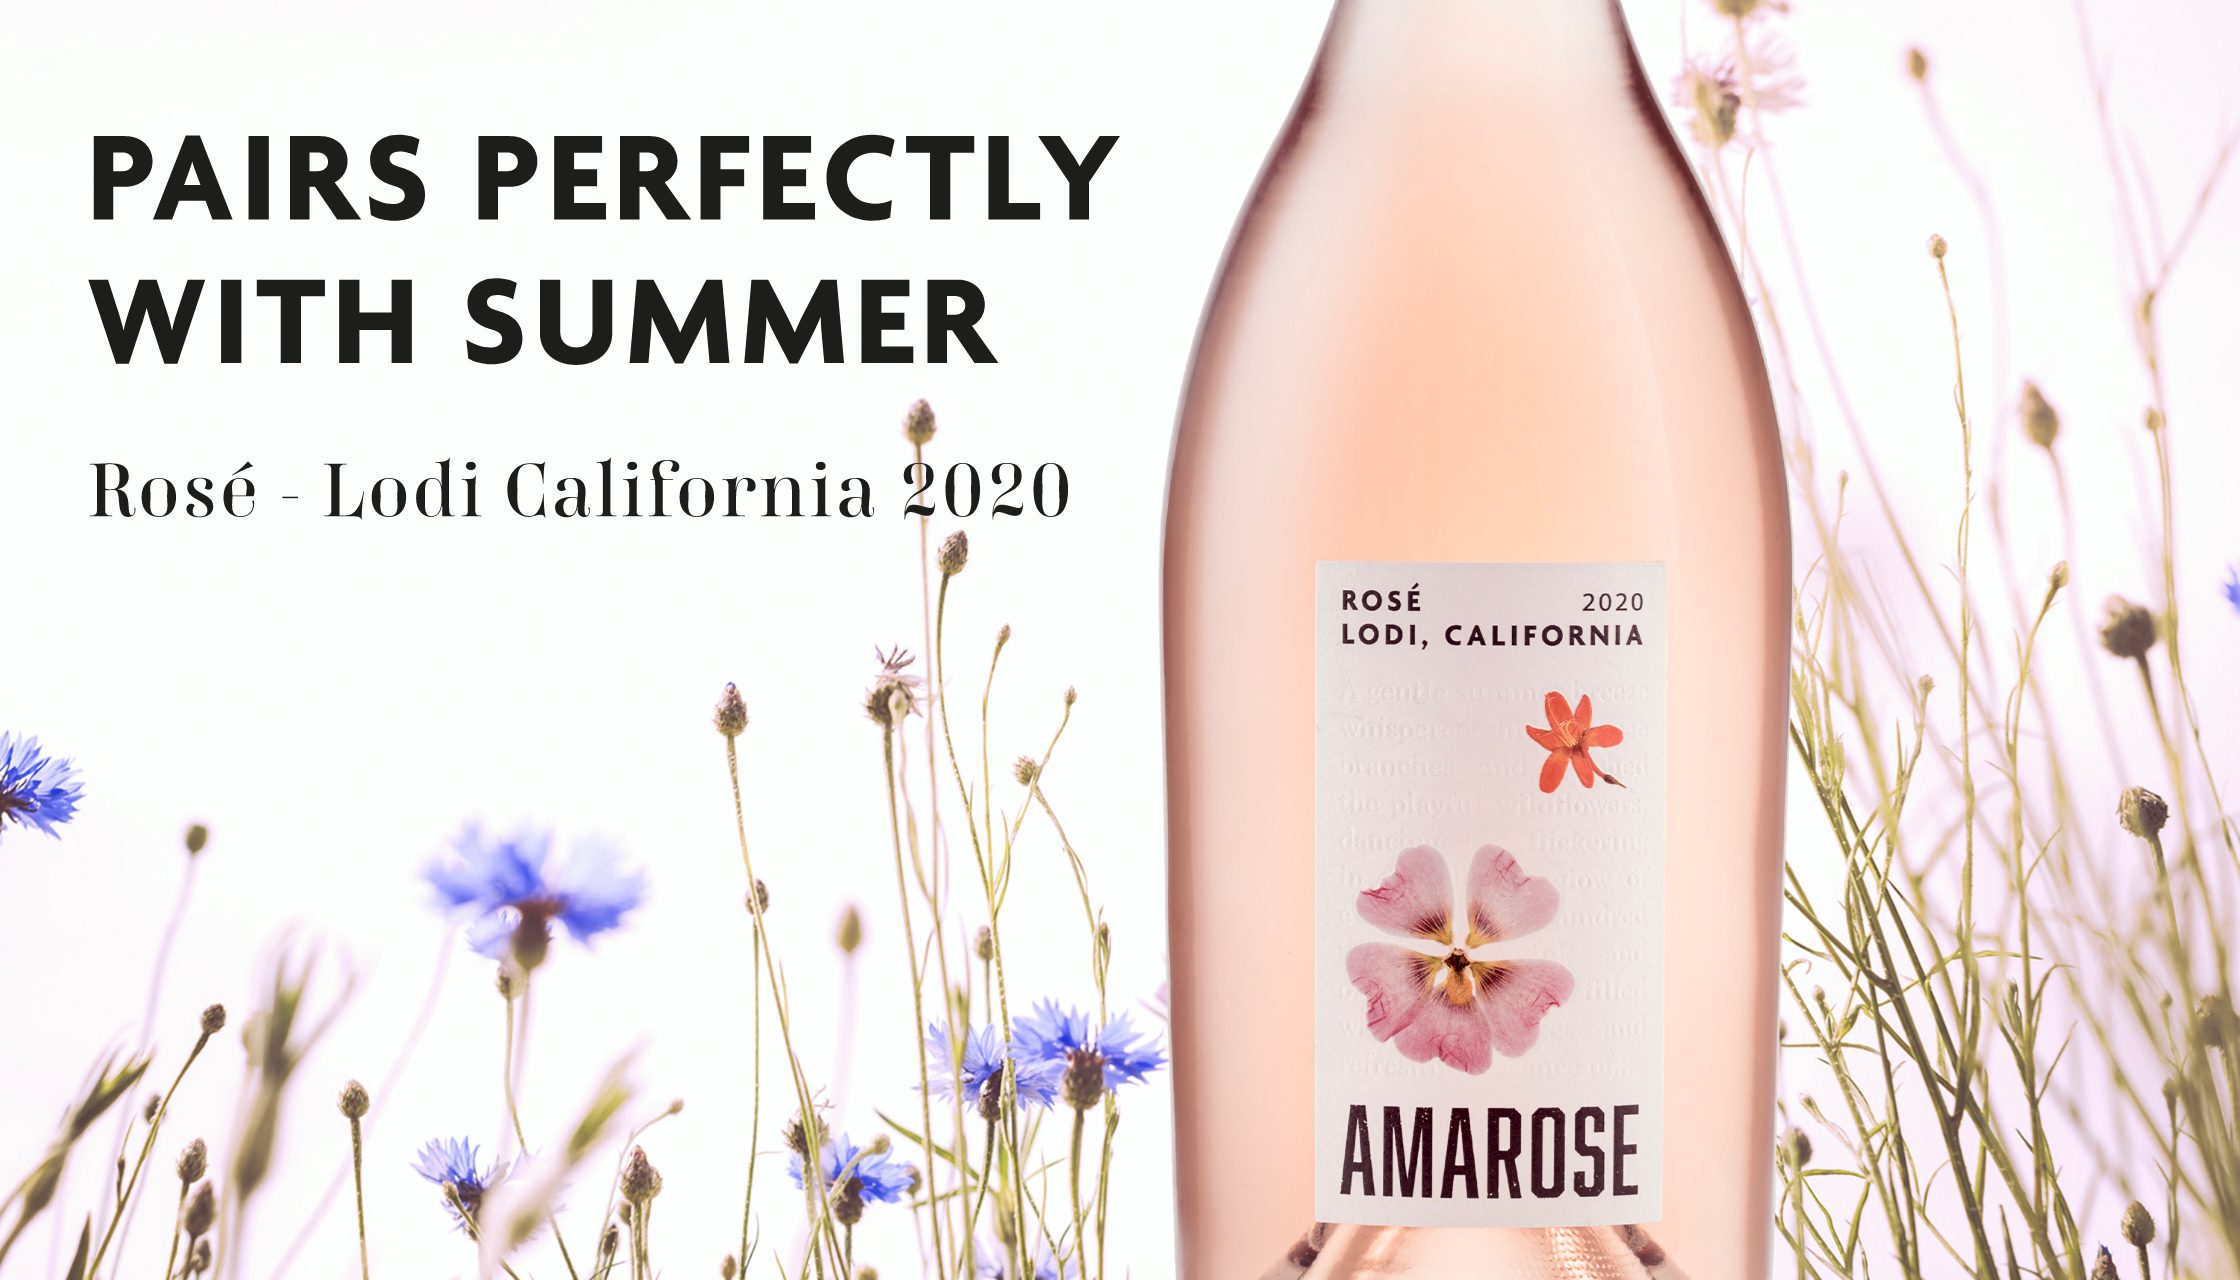 Summer rose wine branding